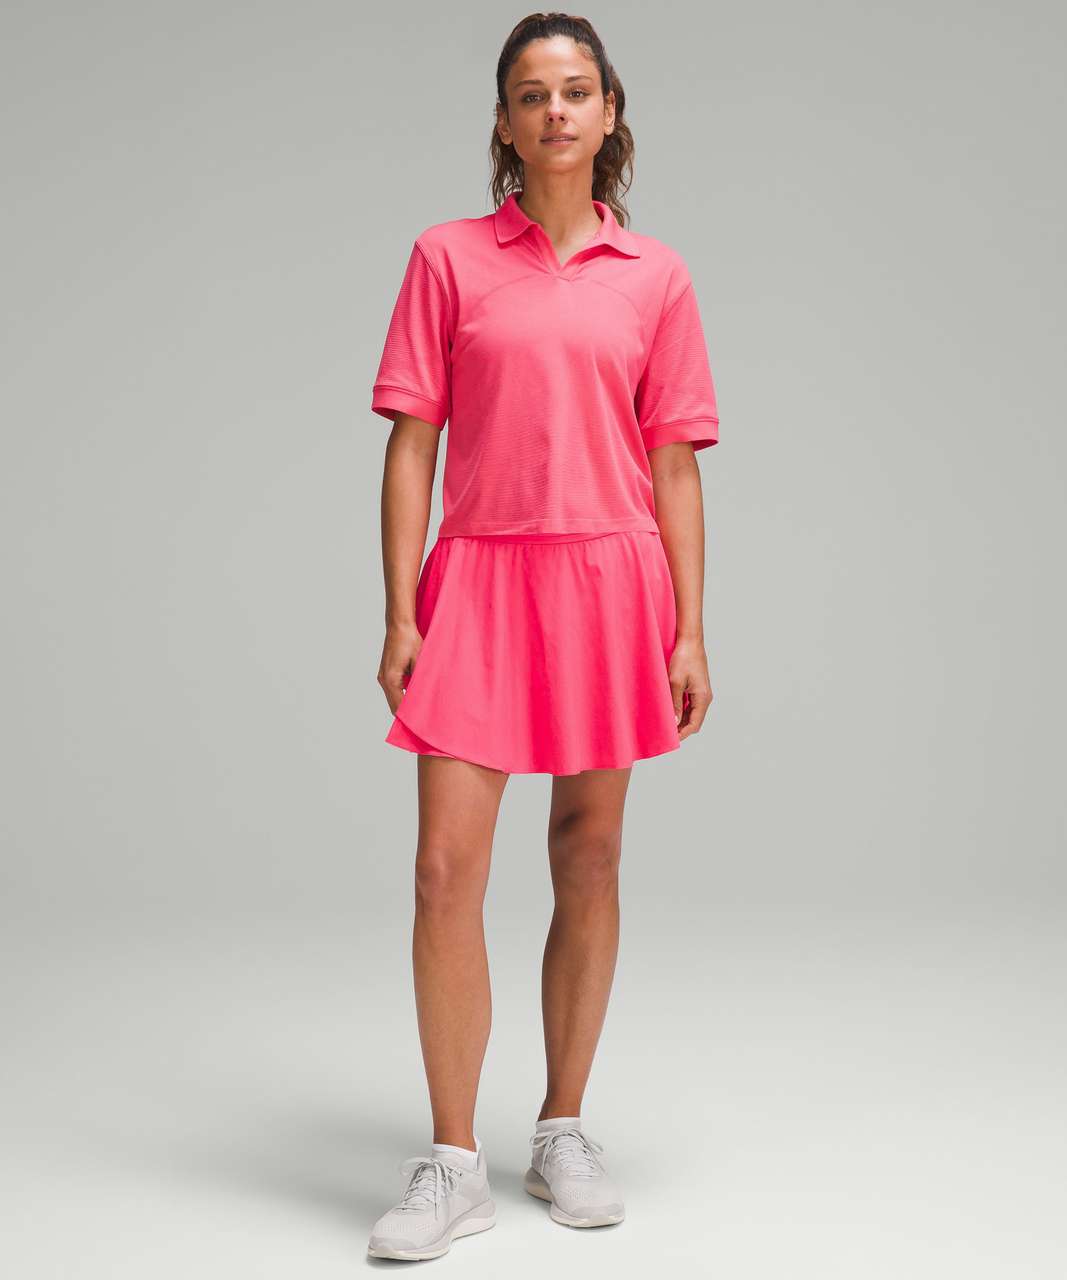 Lululemon Swiftly Tech Relaxed-Fit Polo Shirt - Lip Gloss / Lip Gloss